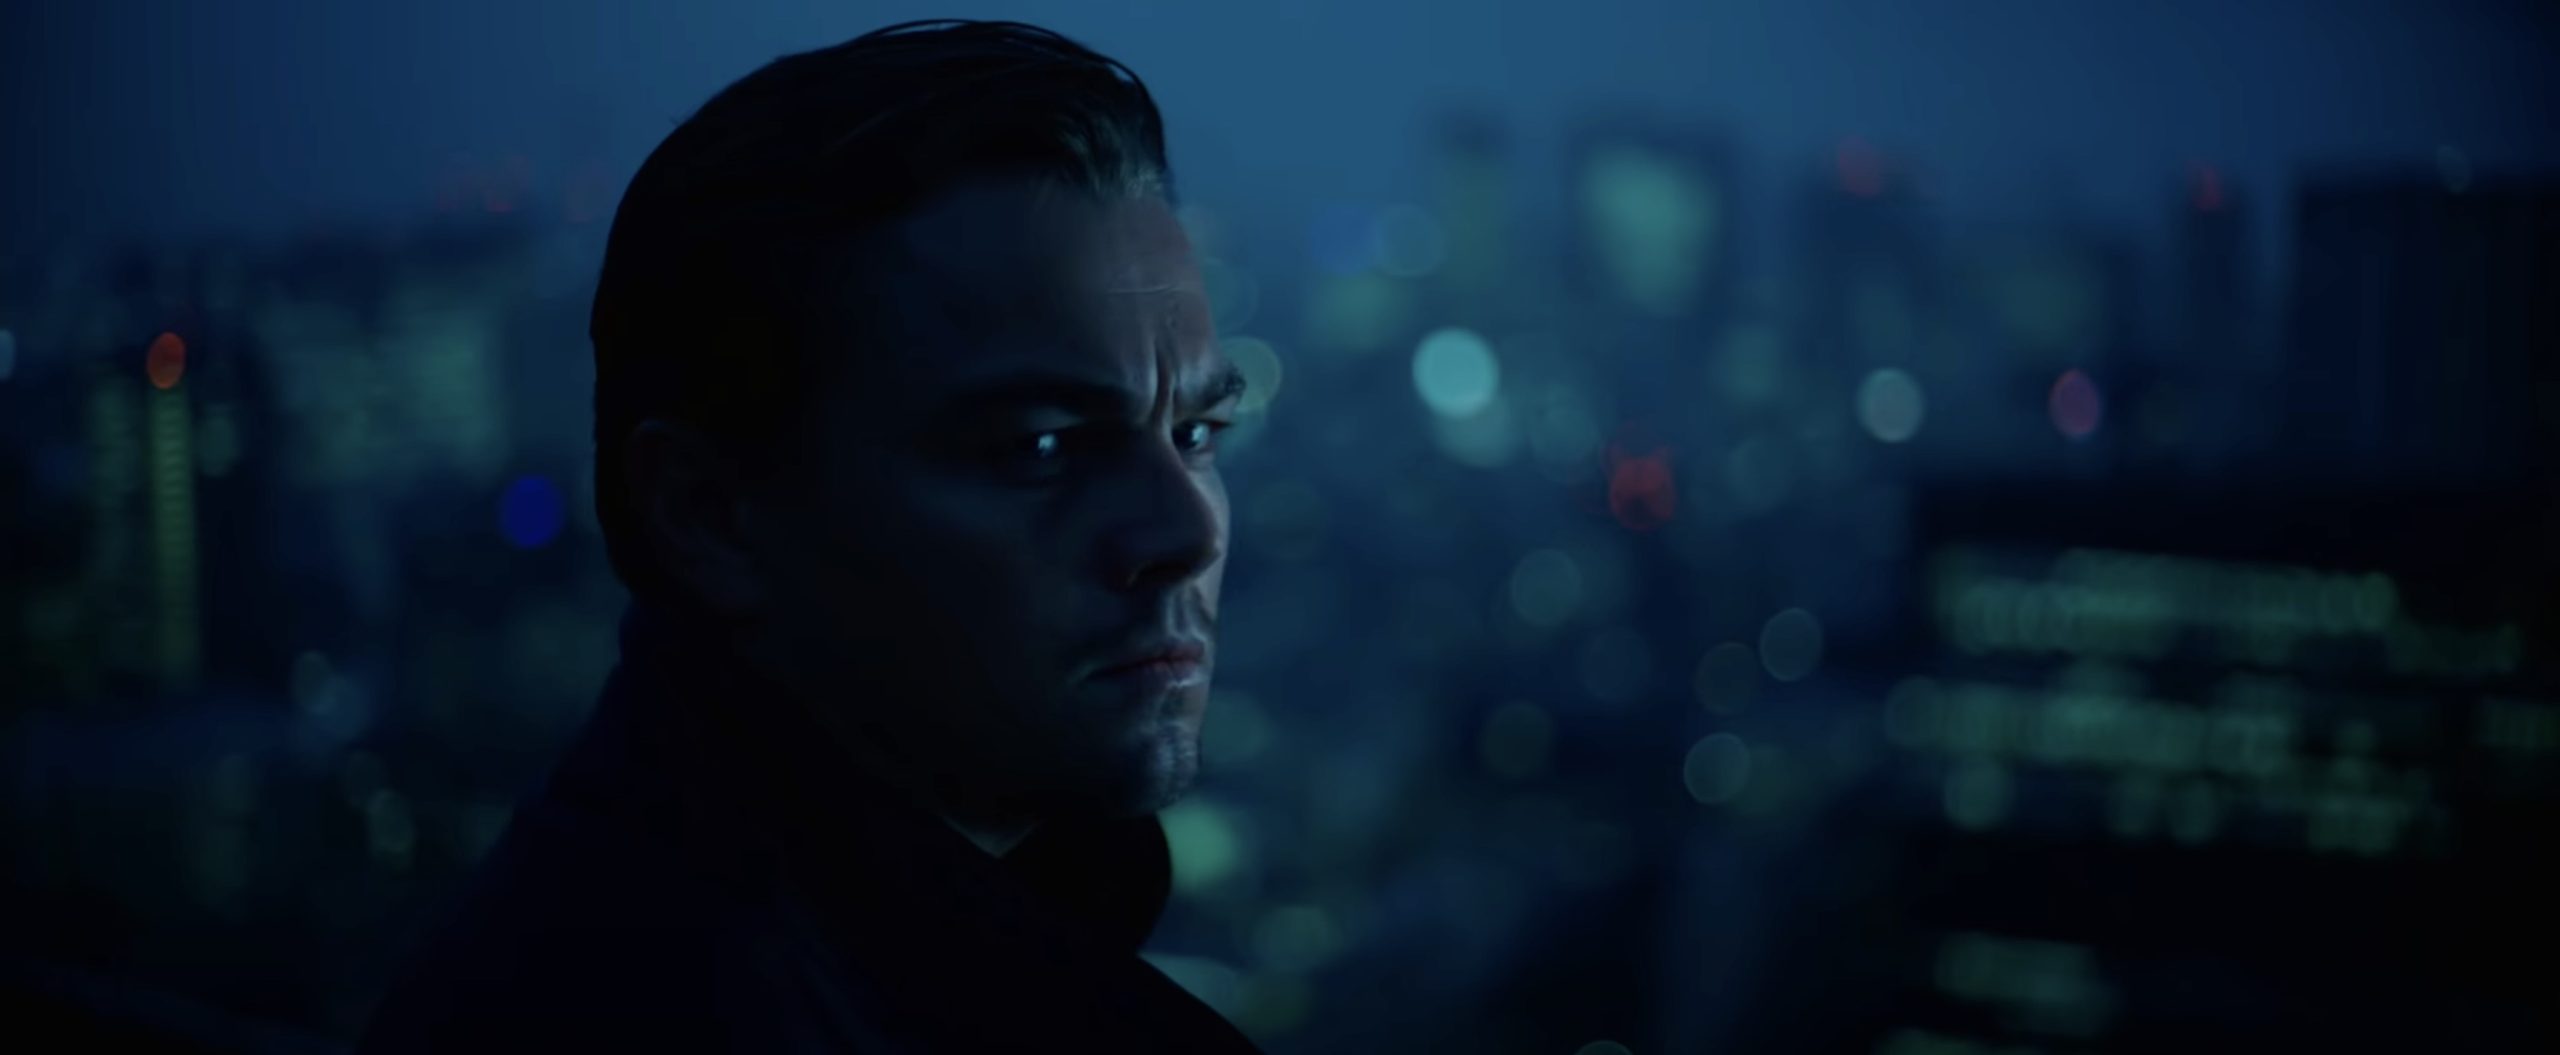 Inception (2010) starring Leonardo DiCaprio